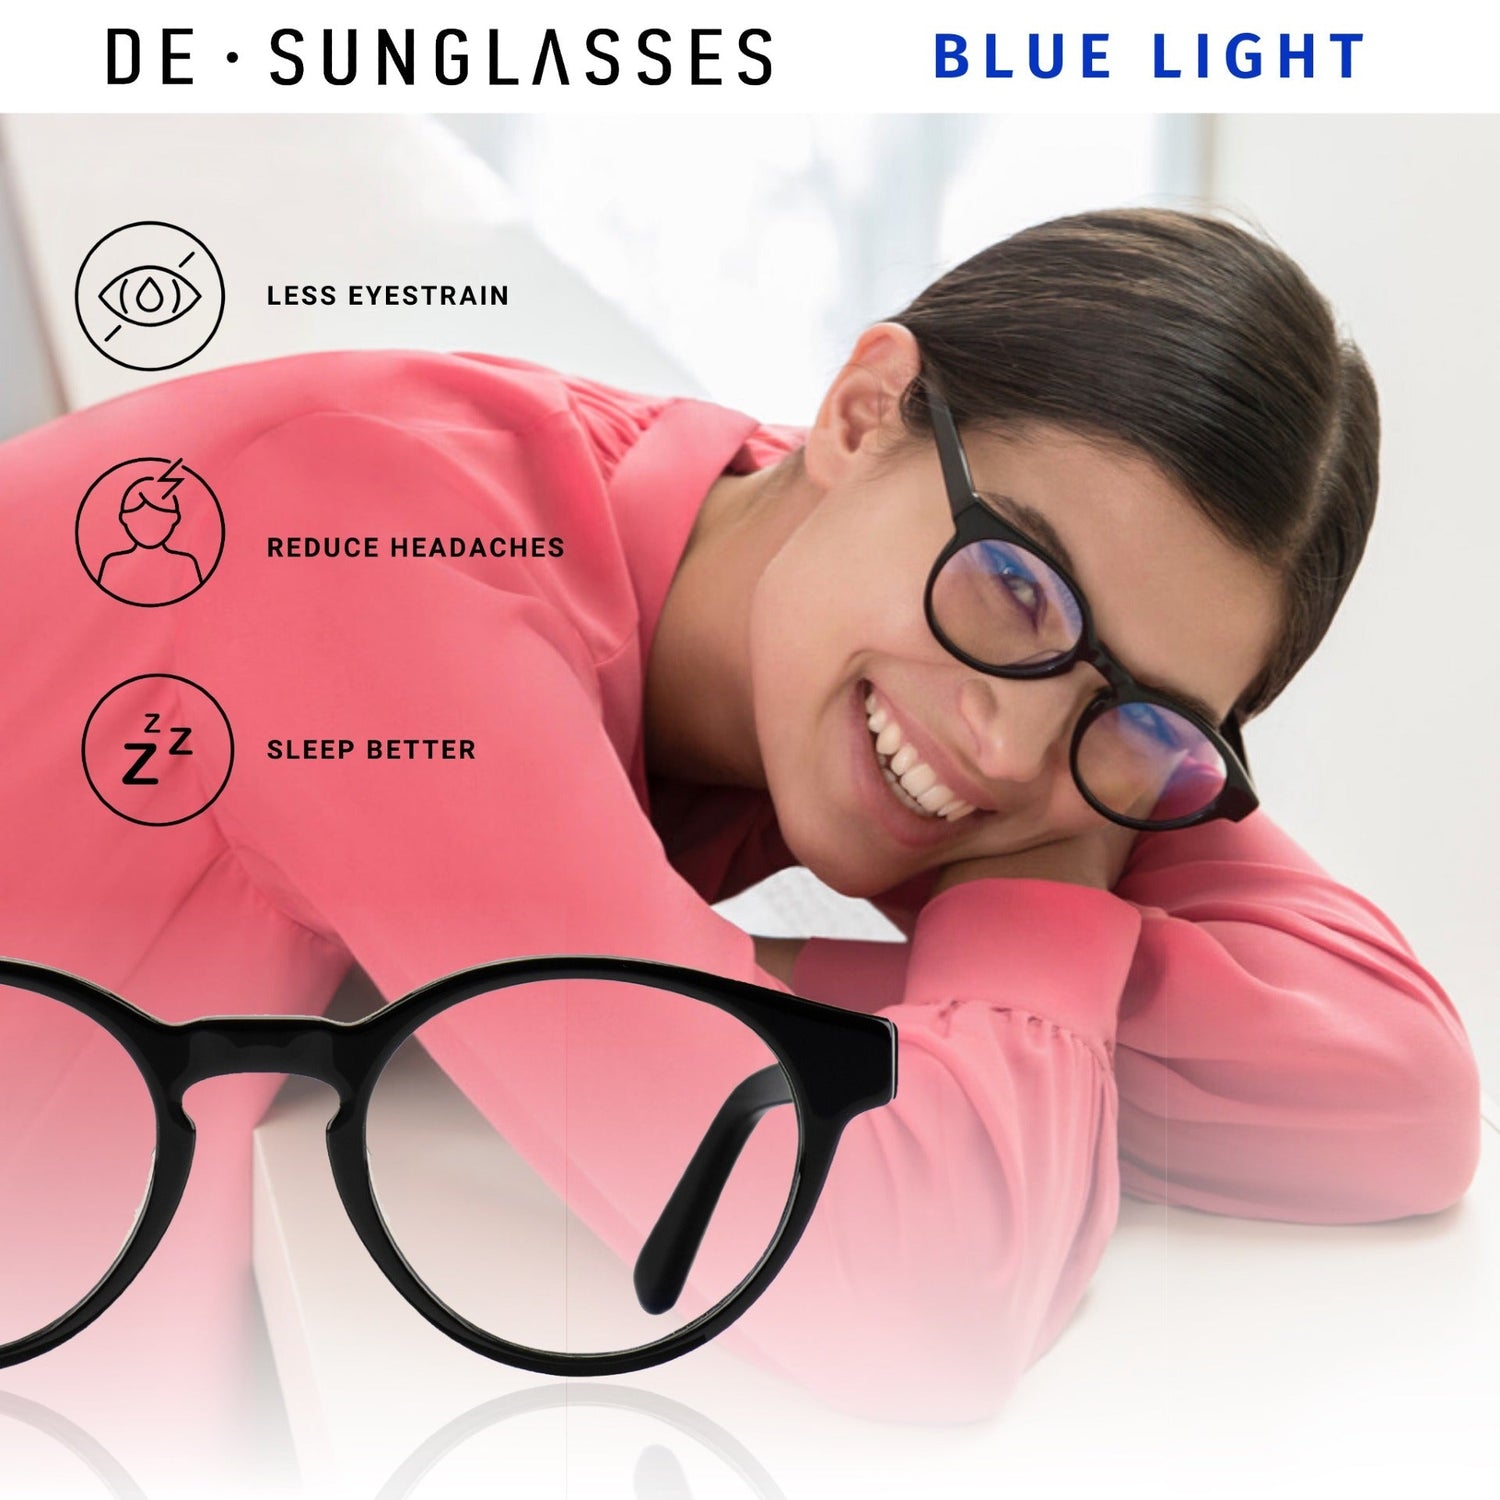 De-sunglasses blue light collection